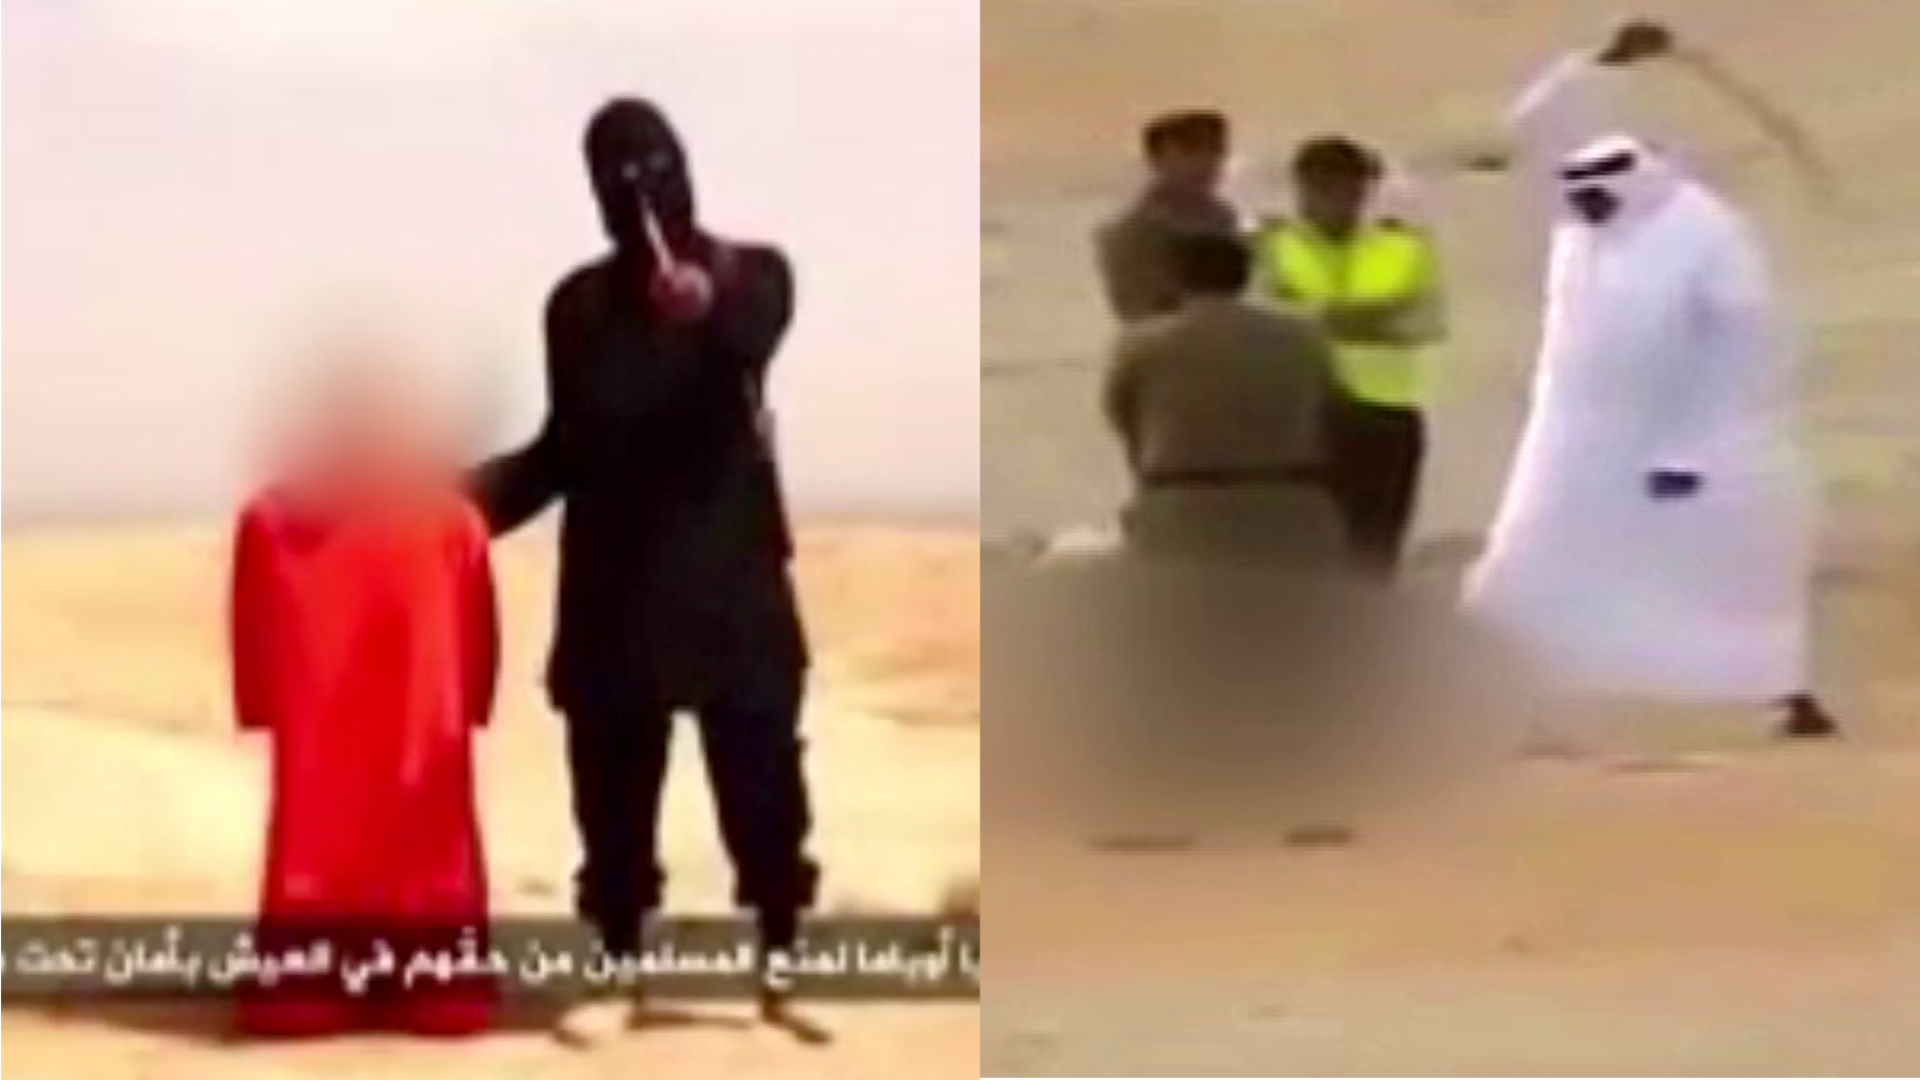 Saudi-Arabien: 47 Hinrichtungen an nur einem Tag. Die Strafen sind ähnlich brutal wie beim "Islamischen Staat". Wie gehen wir mit Menschenrechtsverletzungen von Geschäftspartnern um? dbate.de stellt die Frage: Hinrichtungen in Saudi-Arabien und beim "IS" - was ist der Unterschied?